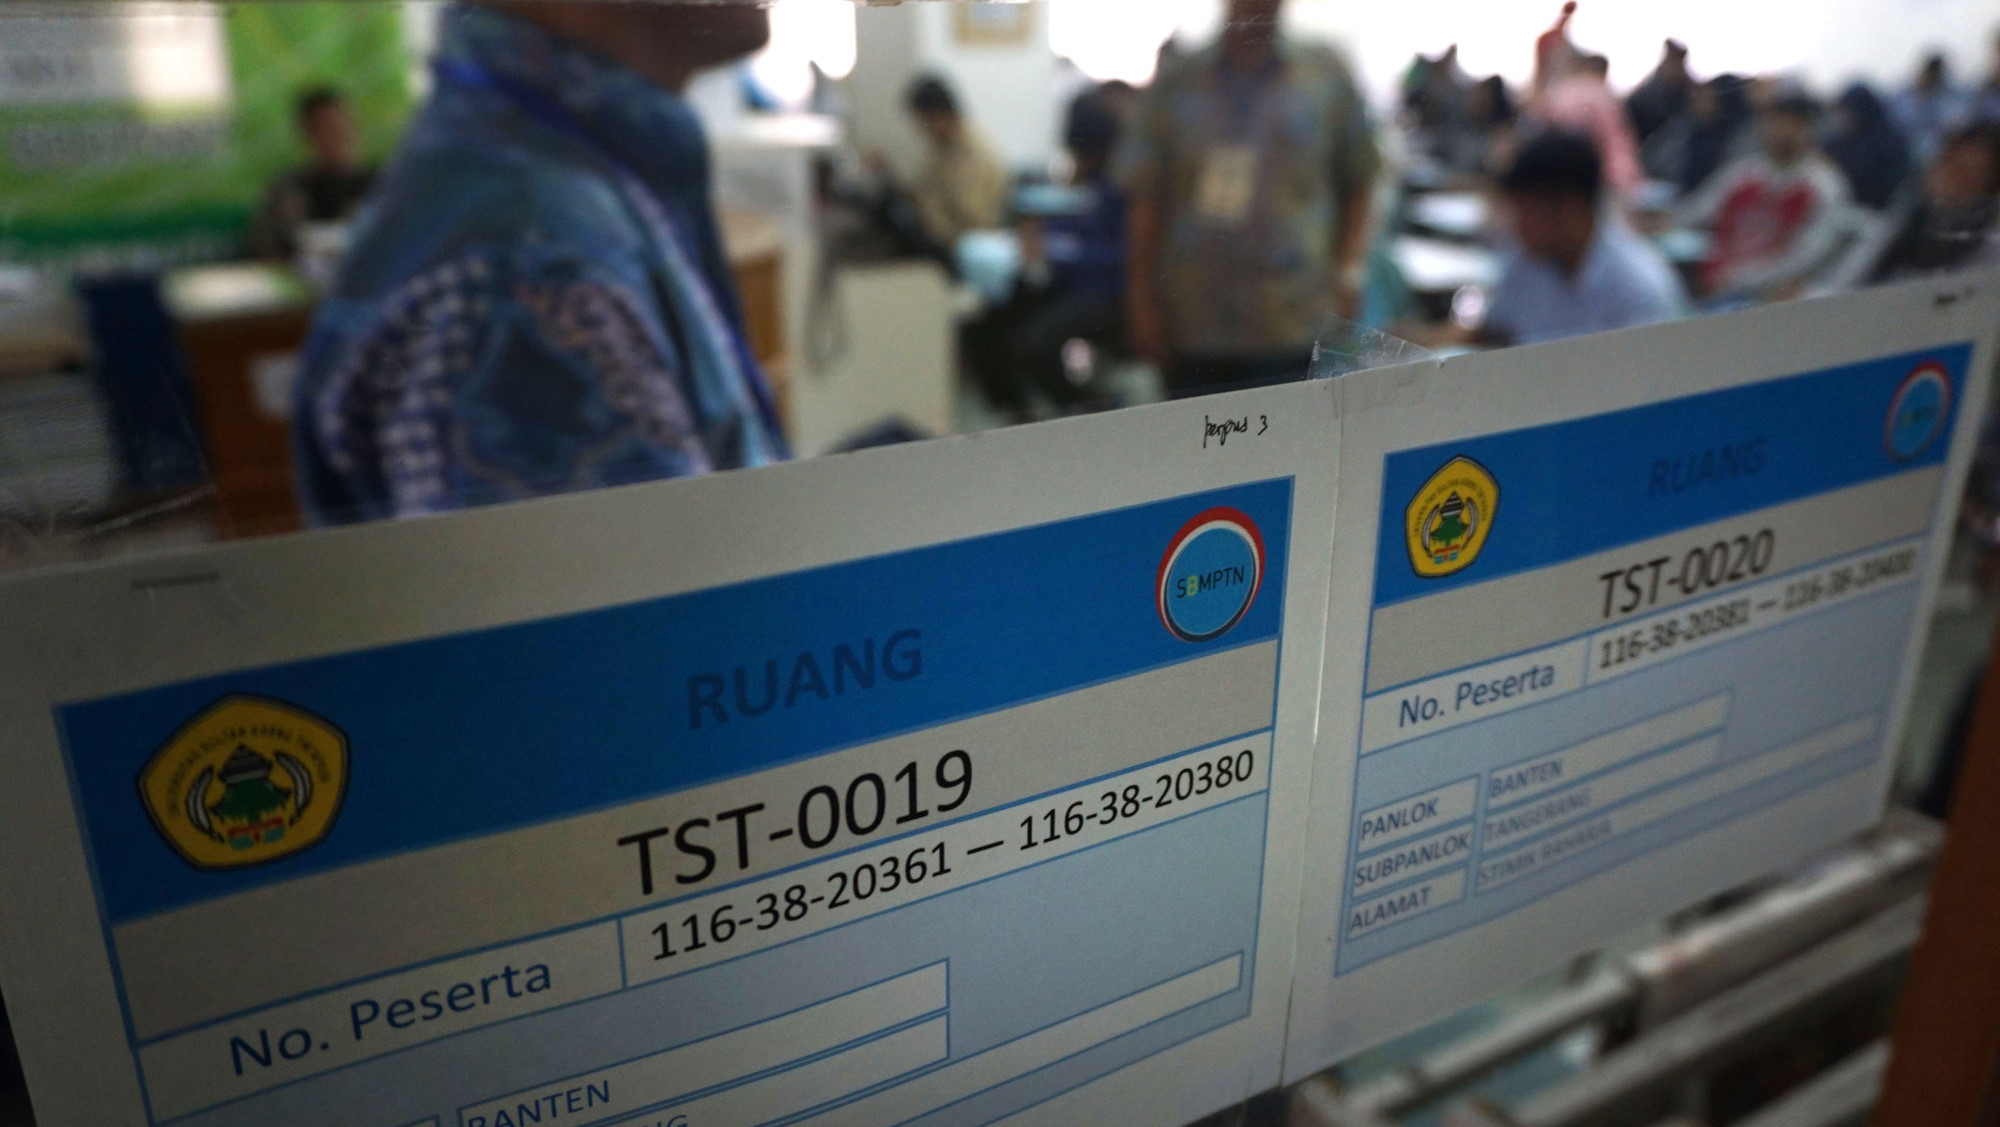 Pendaftar SBMPTN di Padang Capai 36 000 Jelang Penutupan Hari Ini Tirto ID